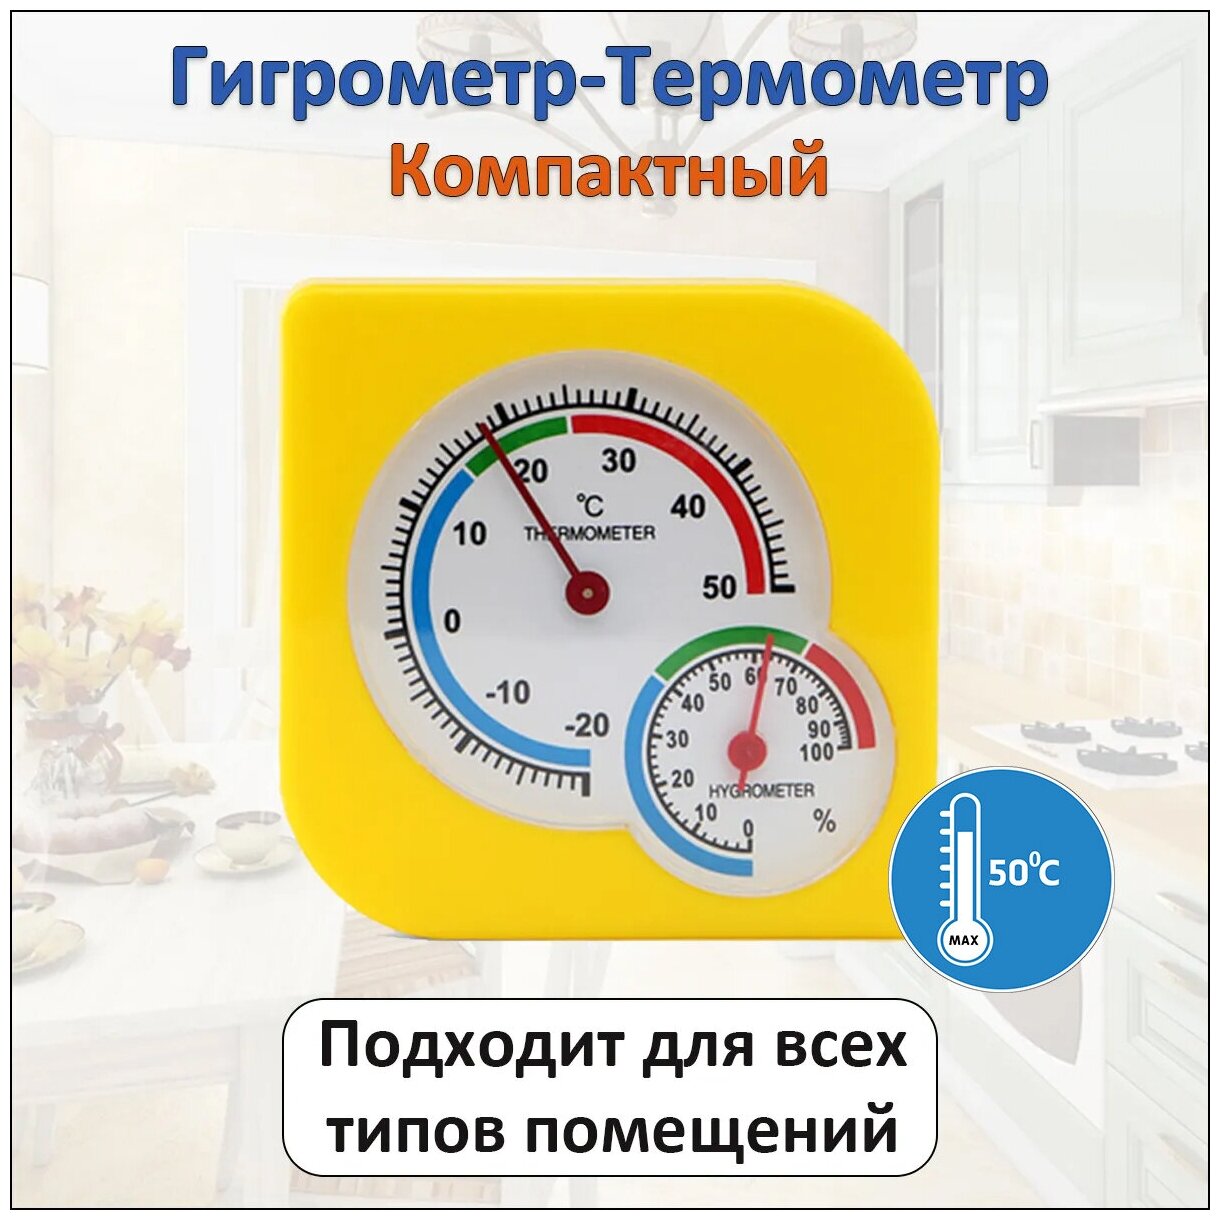 Компактный автономный комнатный термометр гигрометр механический для измерения температуры и влажности